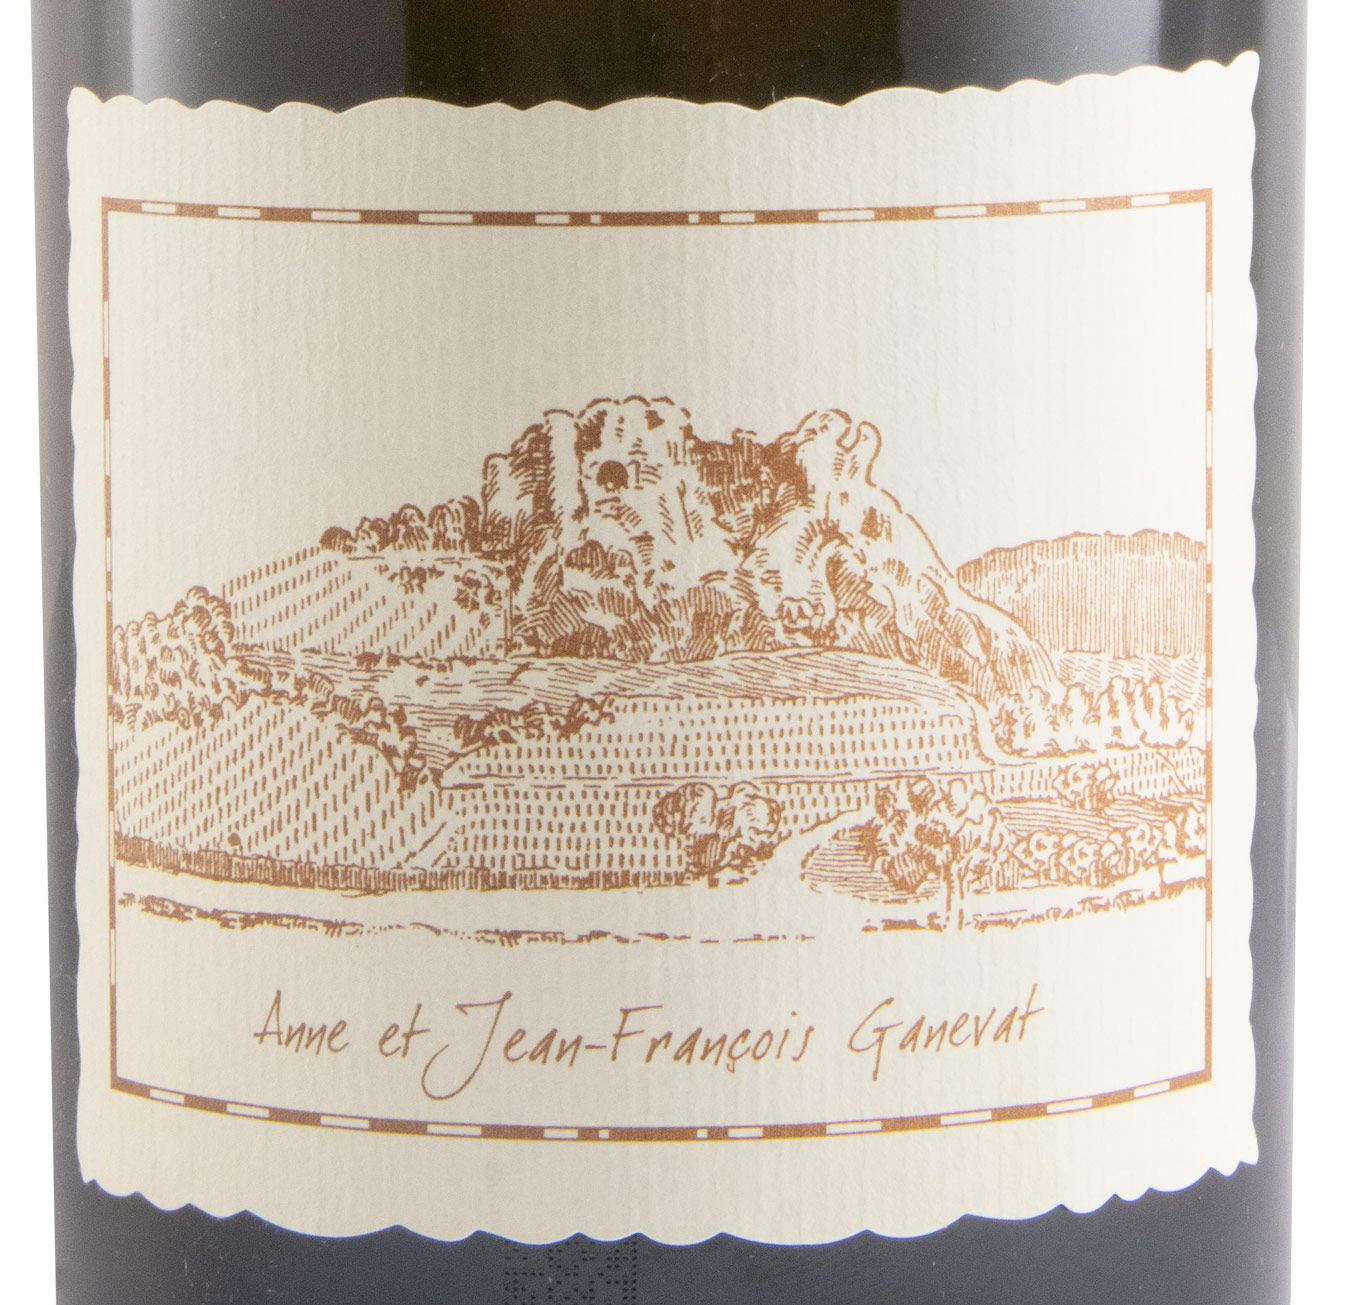 2015 Anne et Jean-François Ganevat Vin Jaune Côtes du Jura white 62cl